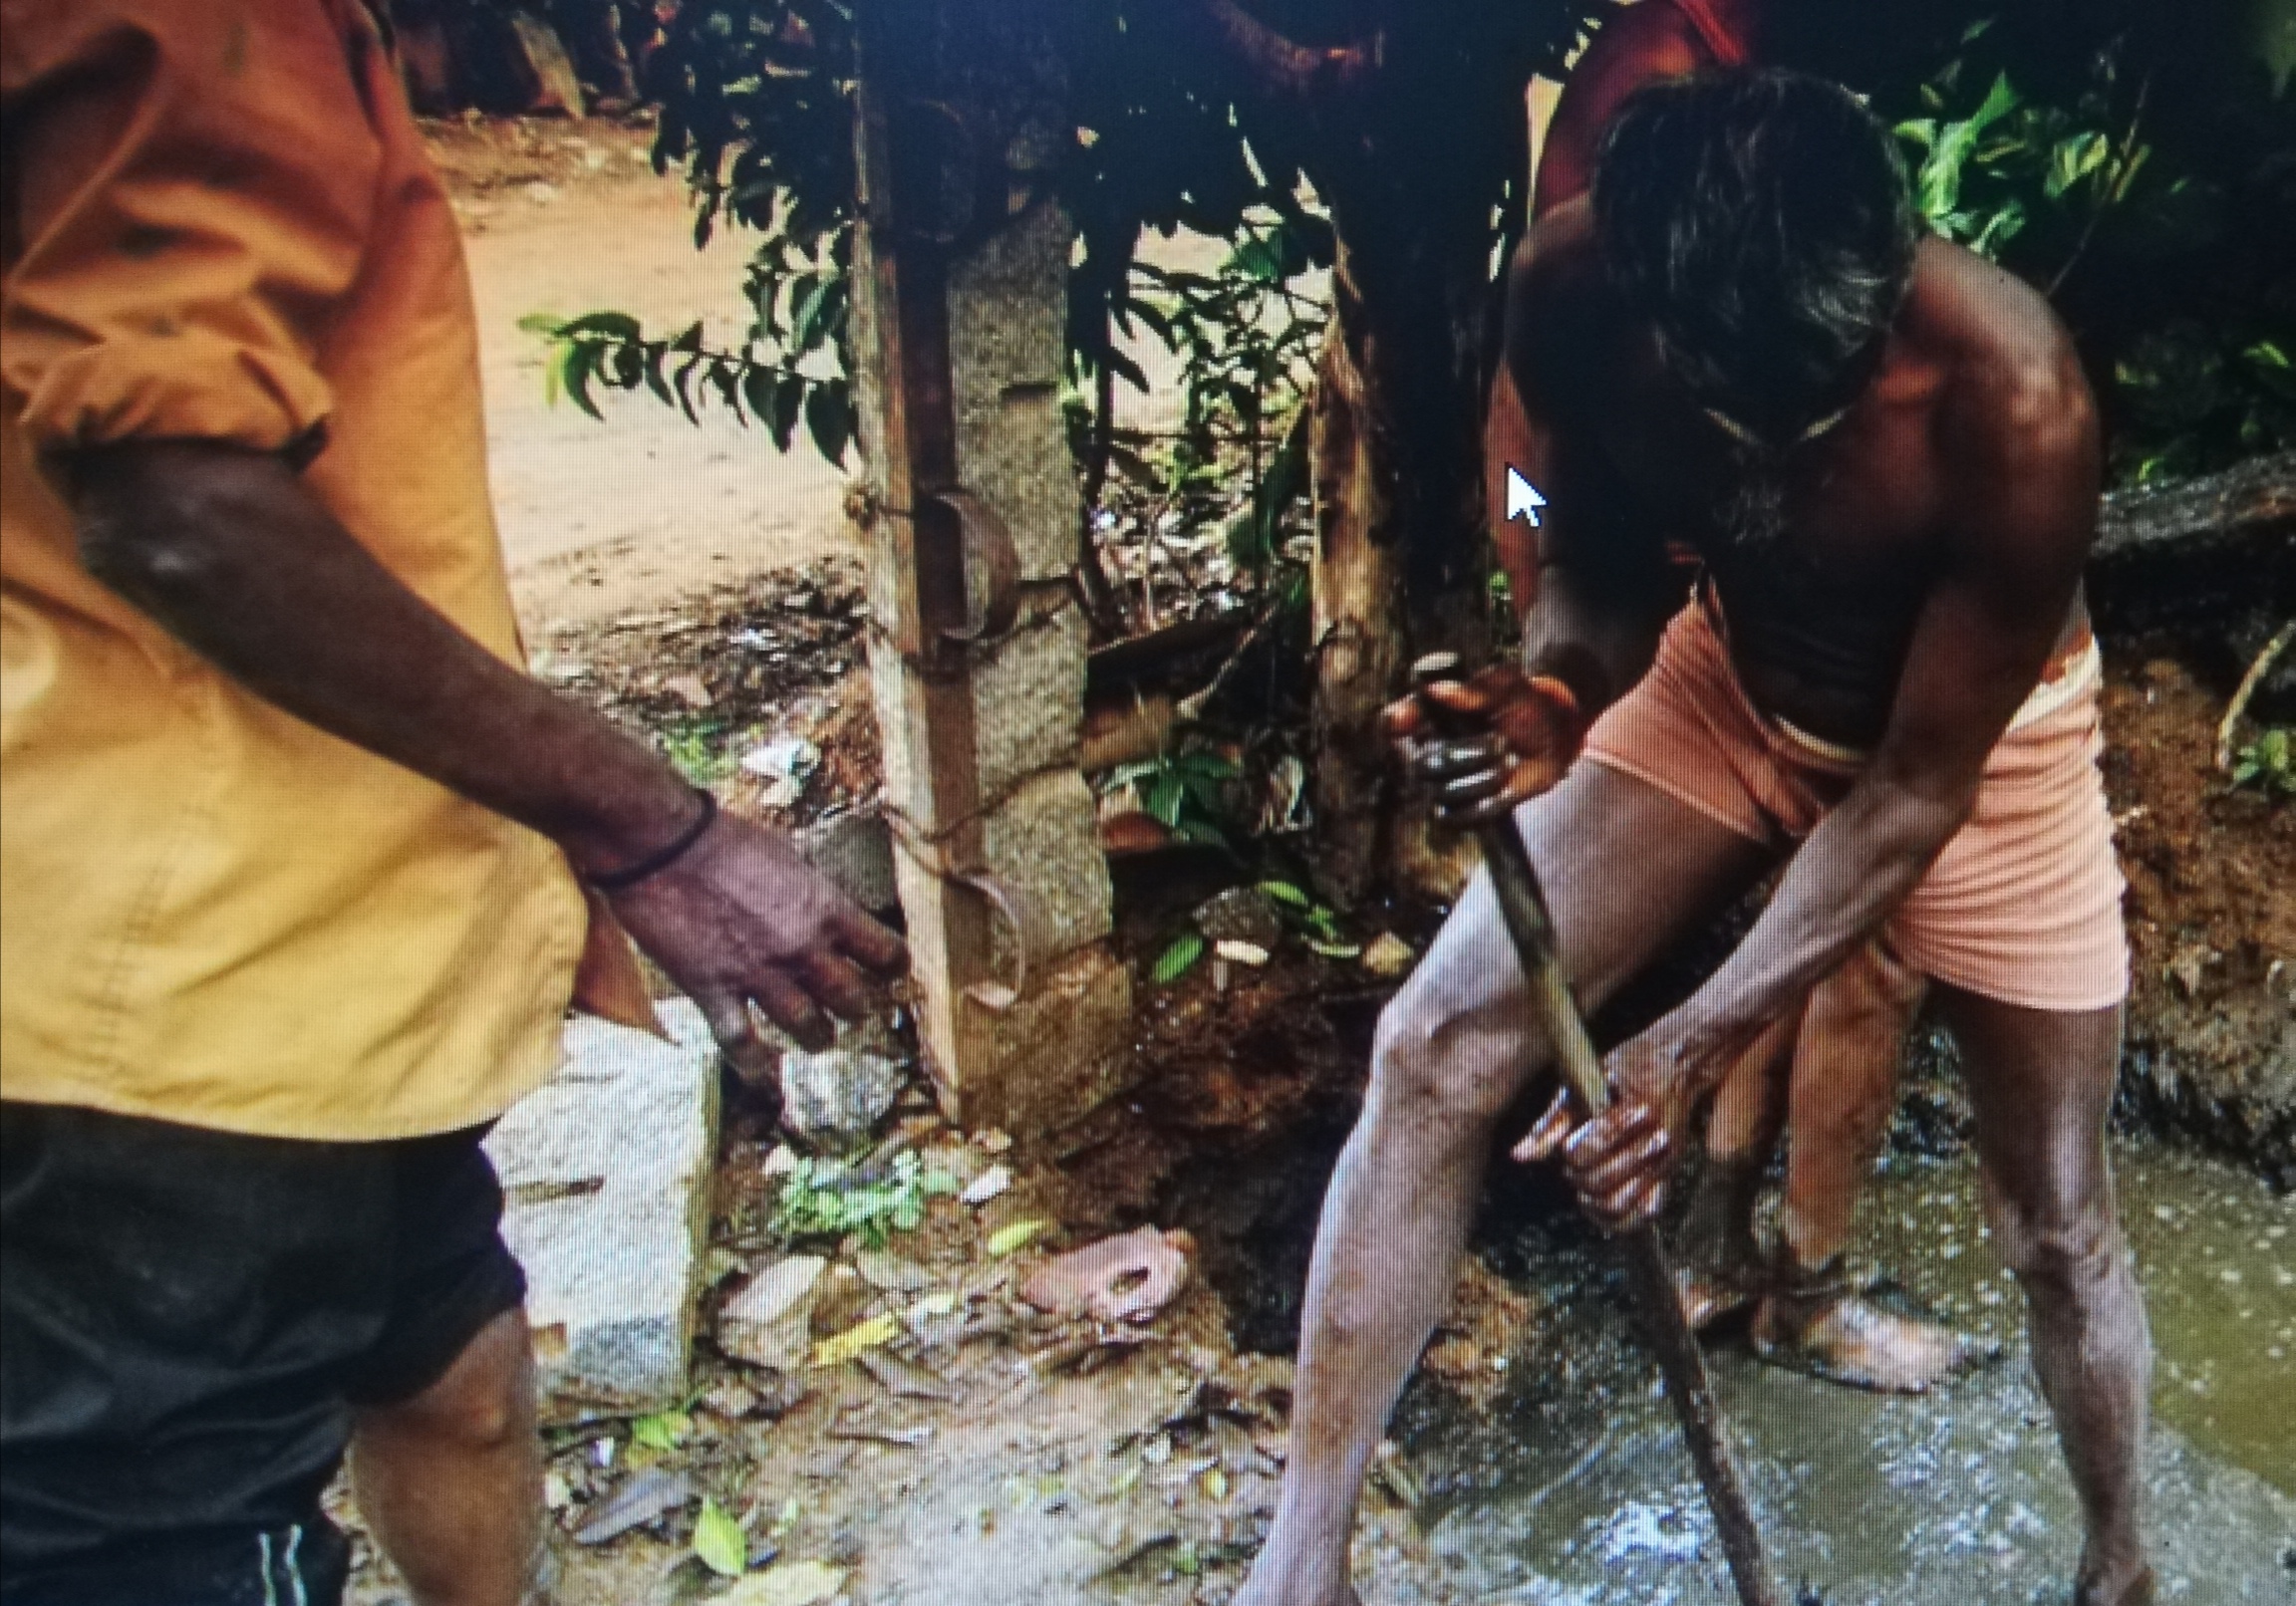 OMS:  Un nuevo informe revela el horror de las condiciones de trabajo de millones de trabajadores de saneamiento en el mundo en desarrollo